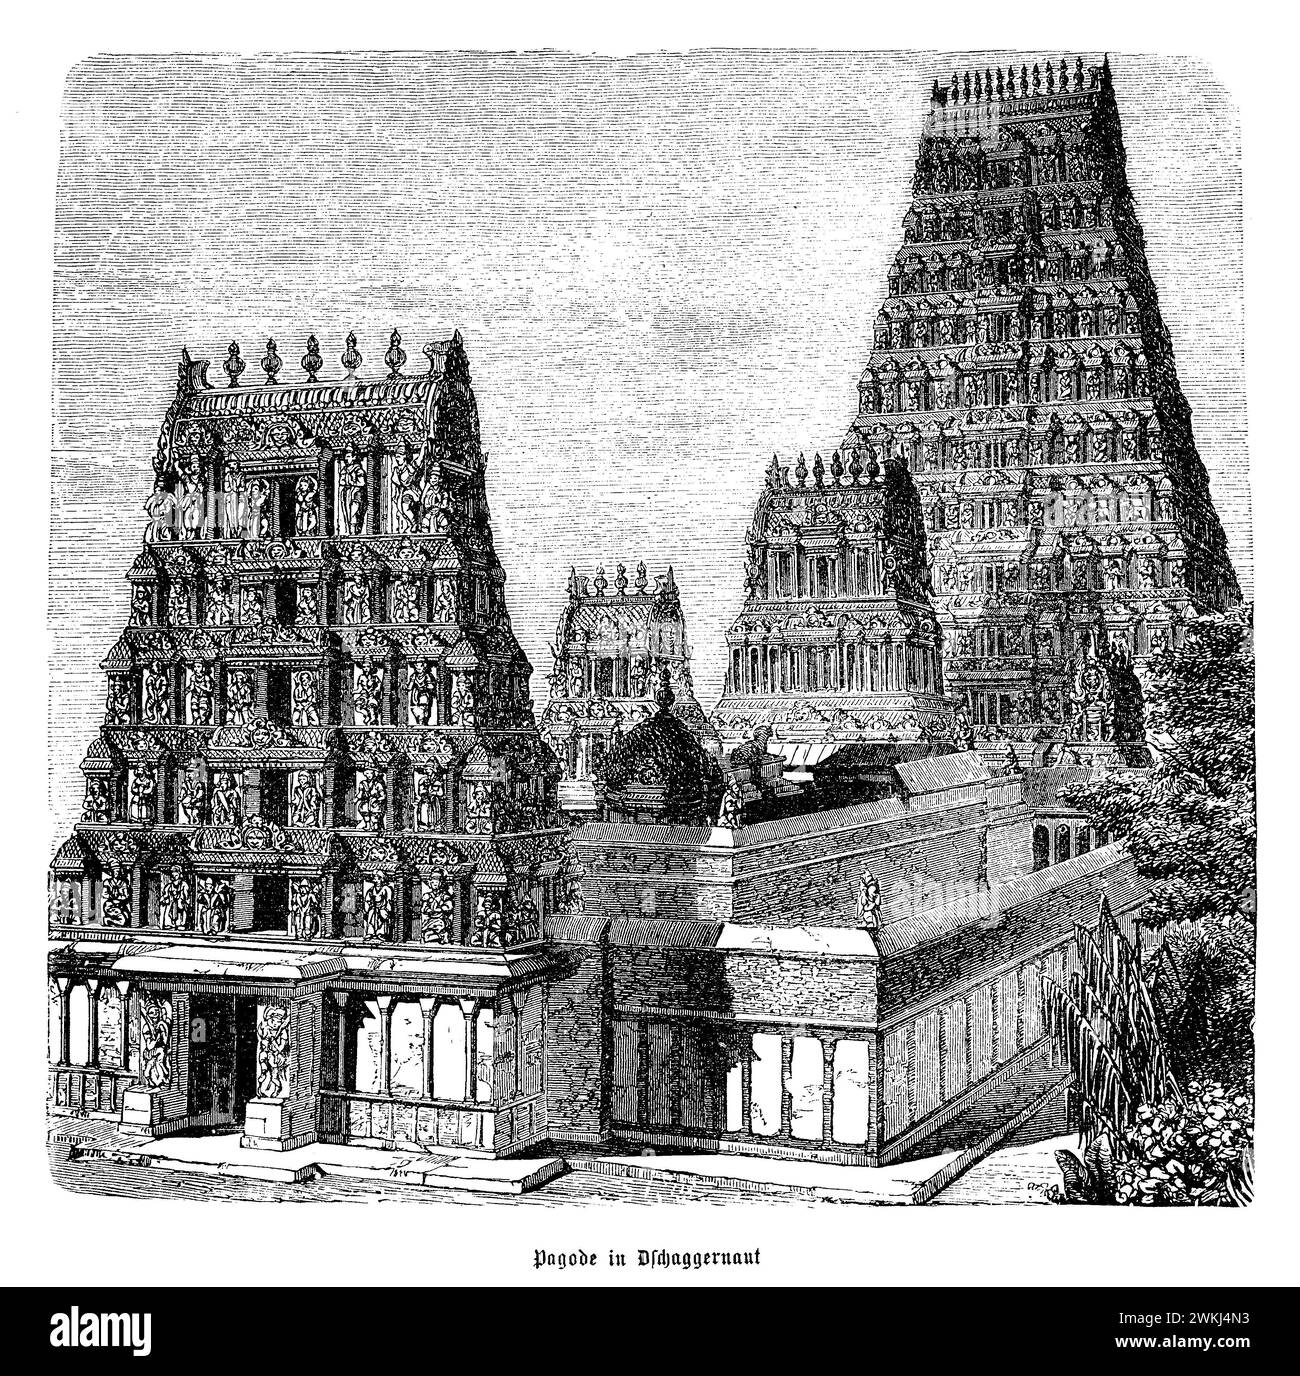 Il Tempio Halasuru Someshwara, annidato nella vivace città di Bangalore, è uno splendido esempio di antica architettura dravidica. Dedicato al Signore Shiva, questo venerato tempio, con la sua storia radicata nel periodo Chola, presenta intricate incisioni, magnifici pilastri e una grande Rajagopuram (torre principale). Il complesso del tempio è adornato da varie sculture e murales che raffigurano scene della mitologia indù, mettendo in risalto l'abilità artistica degli artigiani. Nel corso dei secoli, è stato un centro spirituale per i devoti, offrendo un rifugio tranquillo nel paesaggio urbano. Il Foto Stock